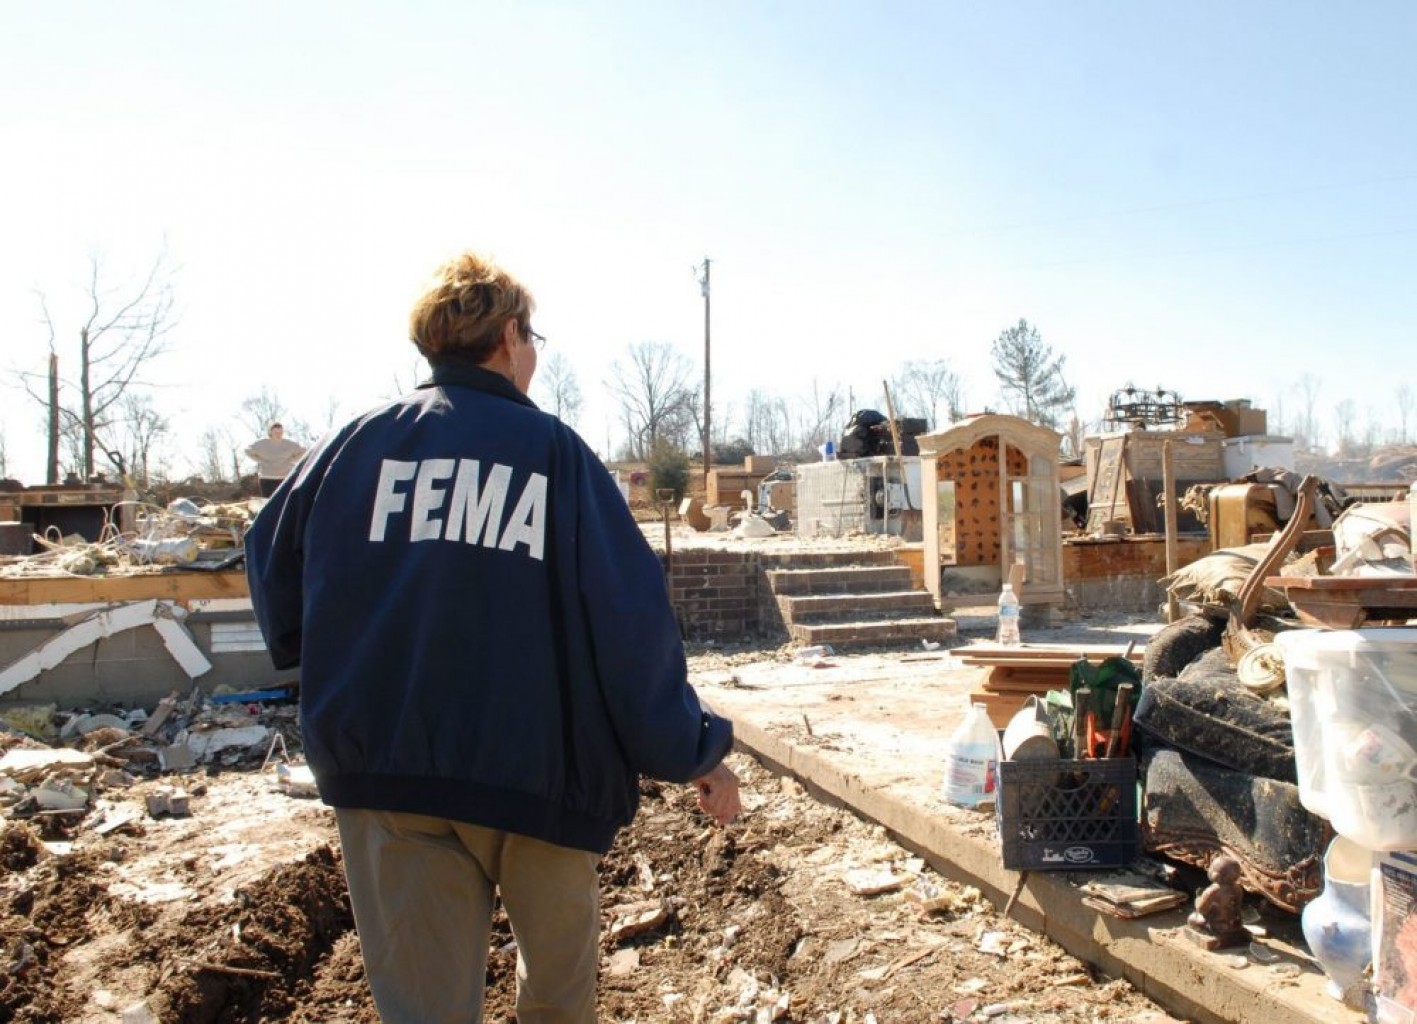 En desacuerdo con FEMA? presente una apelación